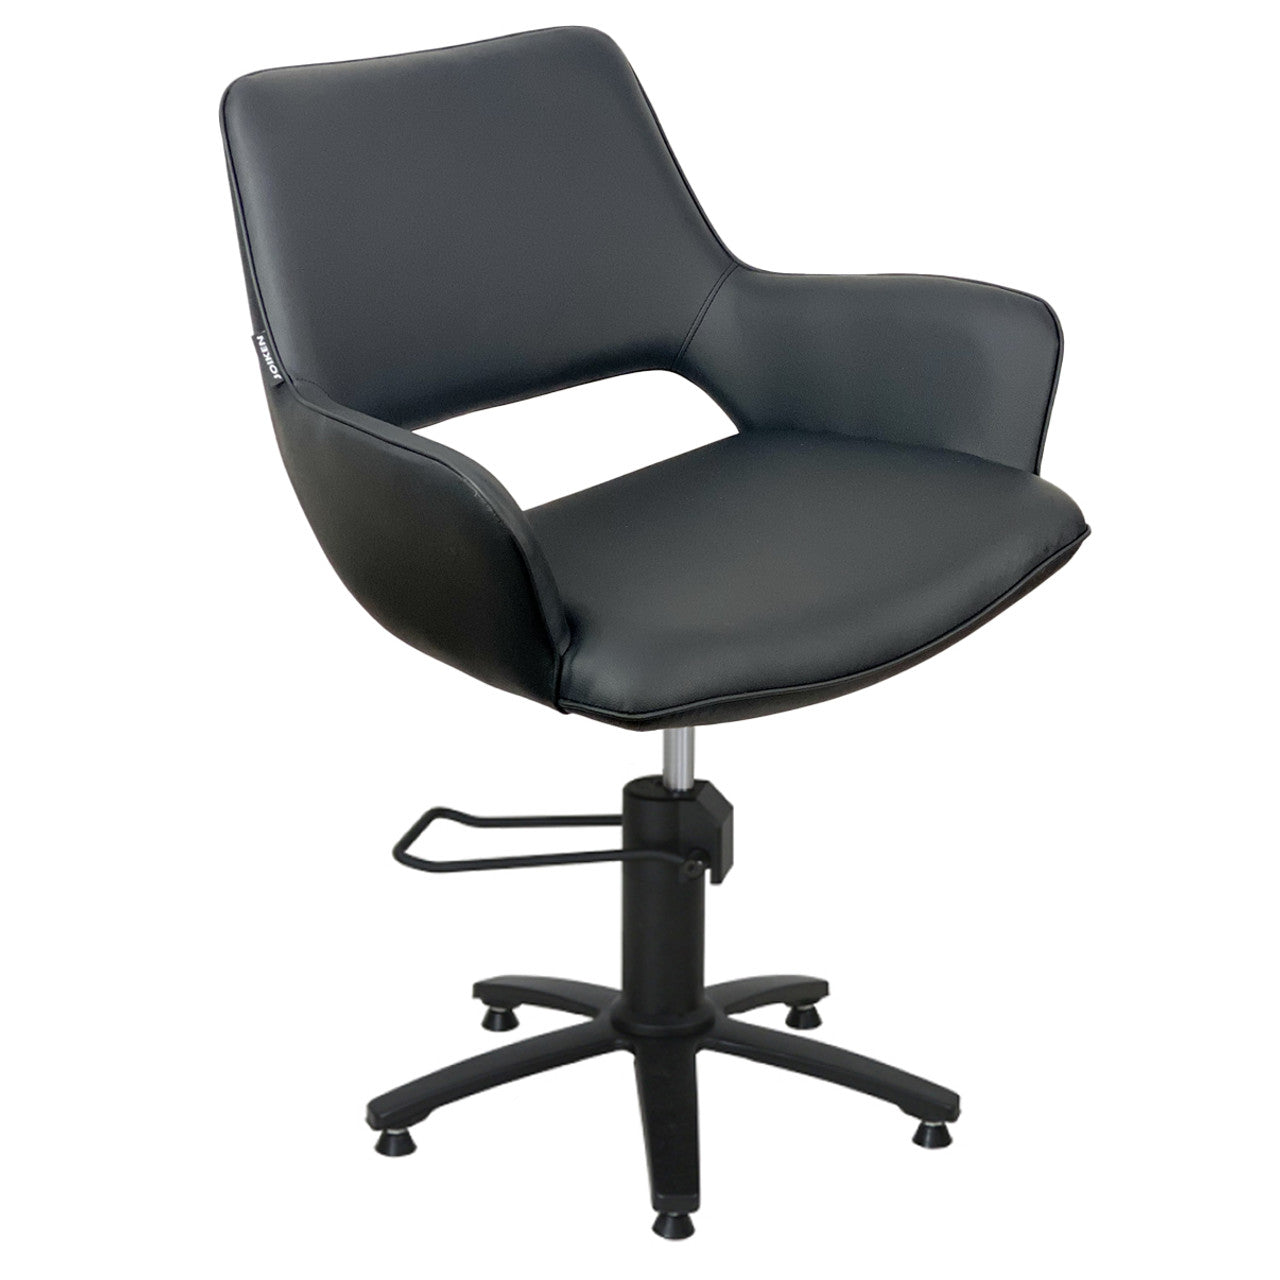 Indigo Black Styling Chair - BLACK 5 Star Hydraulic